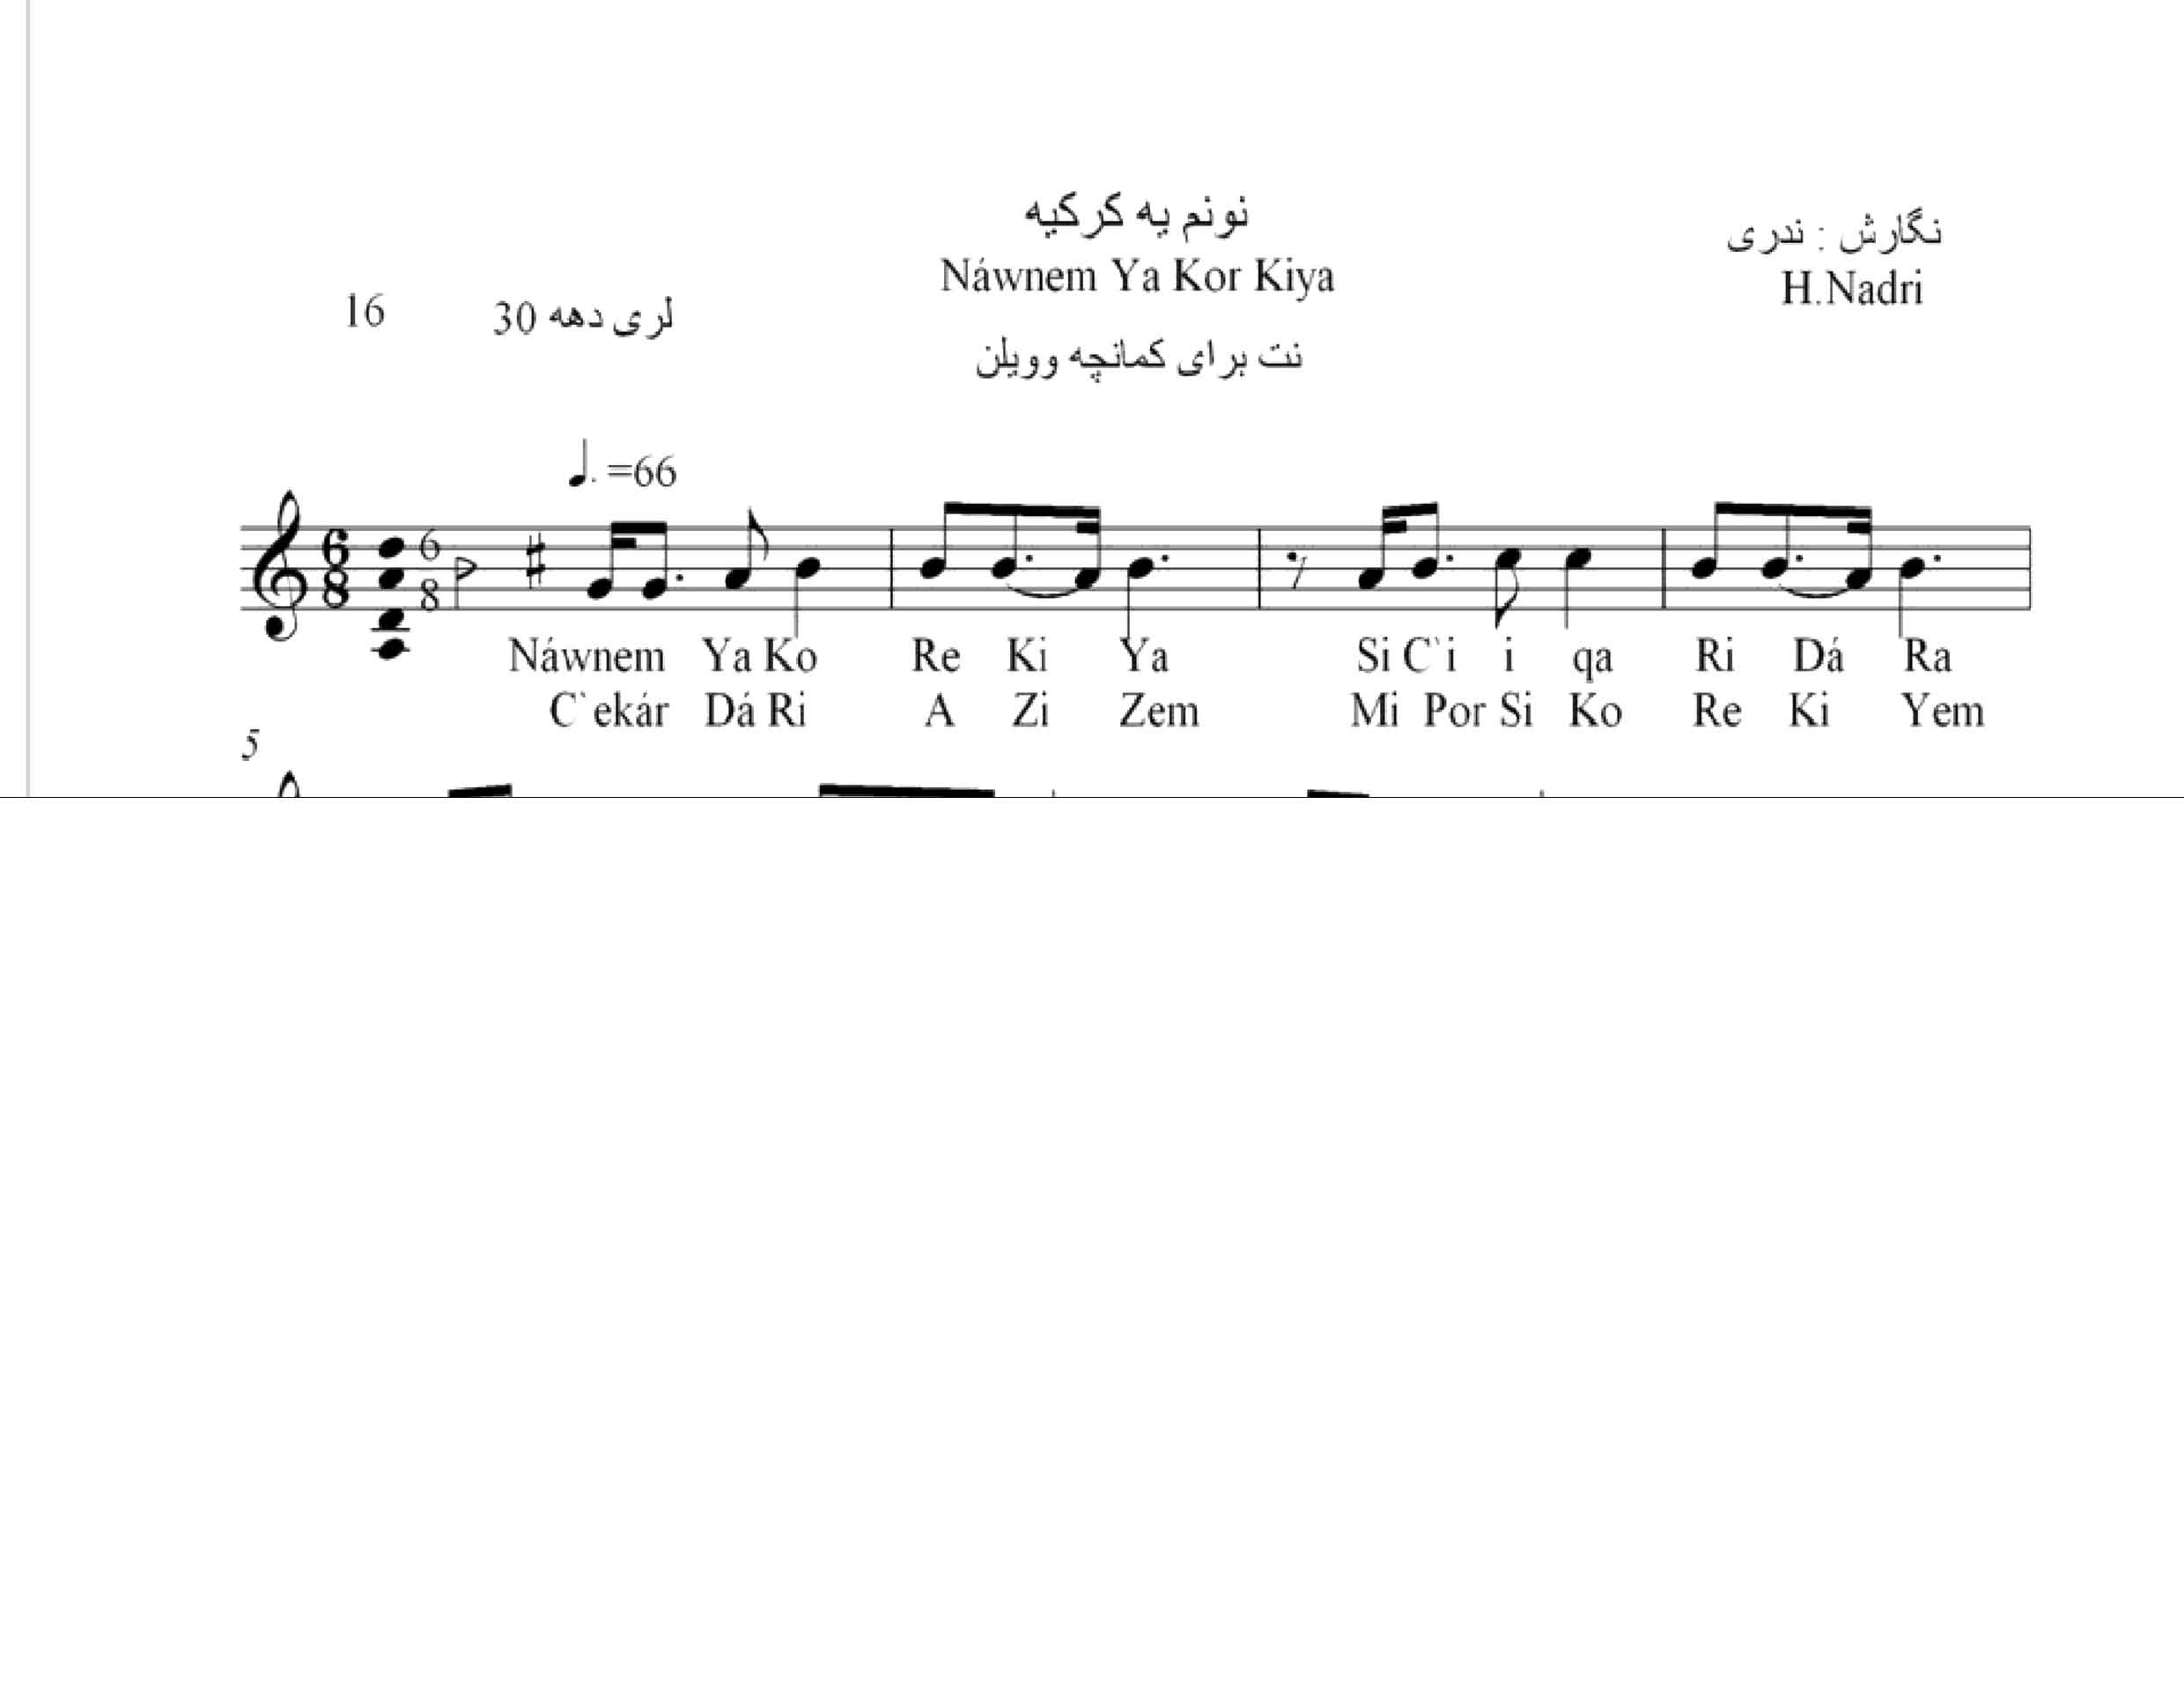 نت آهنگ نونم یه کر کیه محلی لری حجت اله ندری قابل اجرا با کمانچه و دیگر سازها